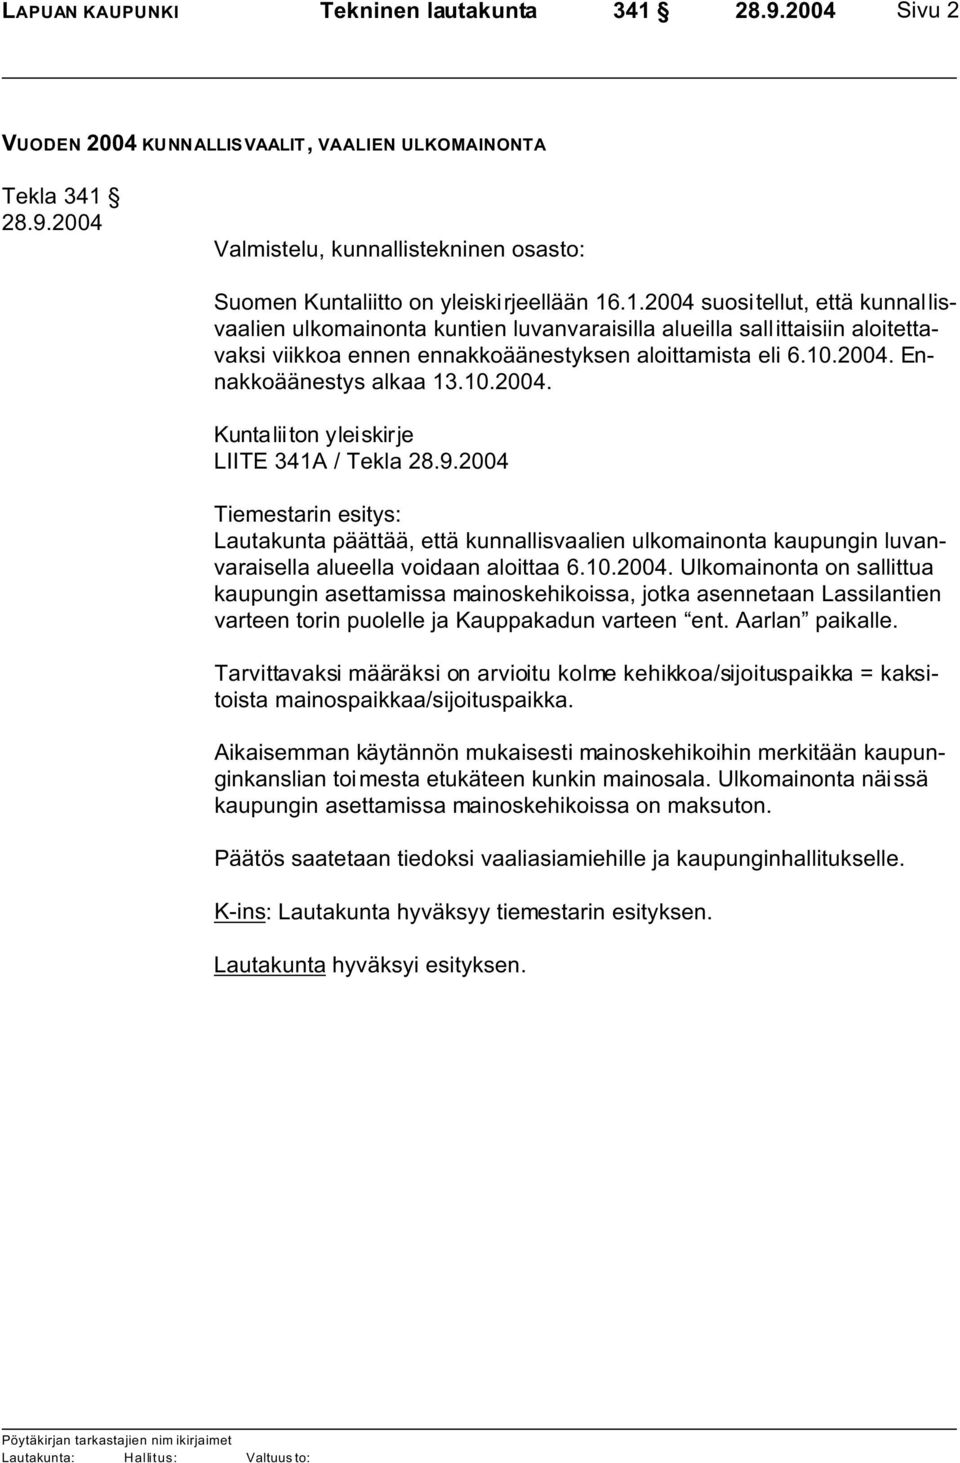 Valmistelu, kunnallistekninen osasto: Suomen Kuntaliitto on yleiskirjeellään 16